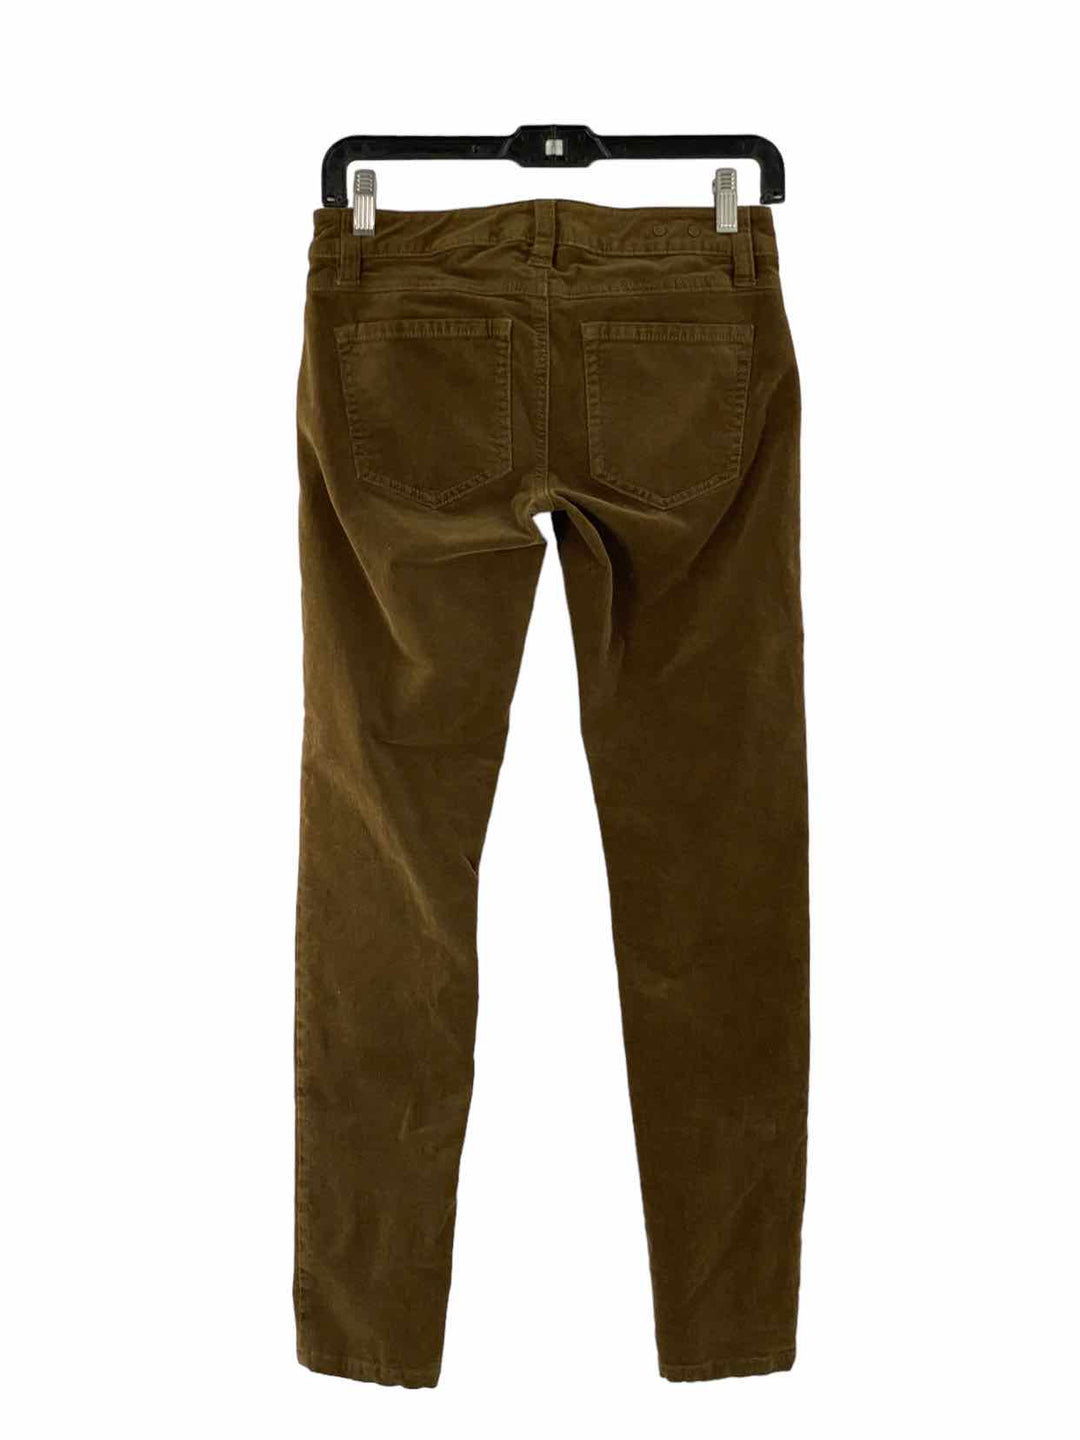 Cabi Size 0 Brown Corduroy Pants